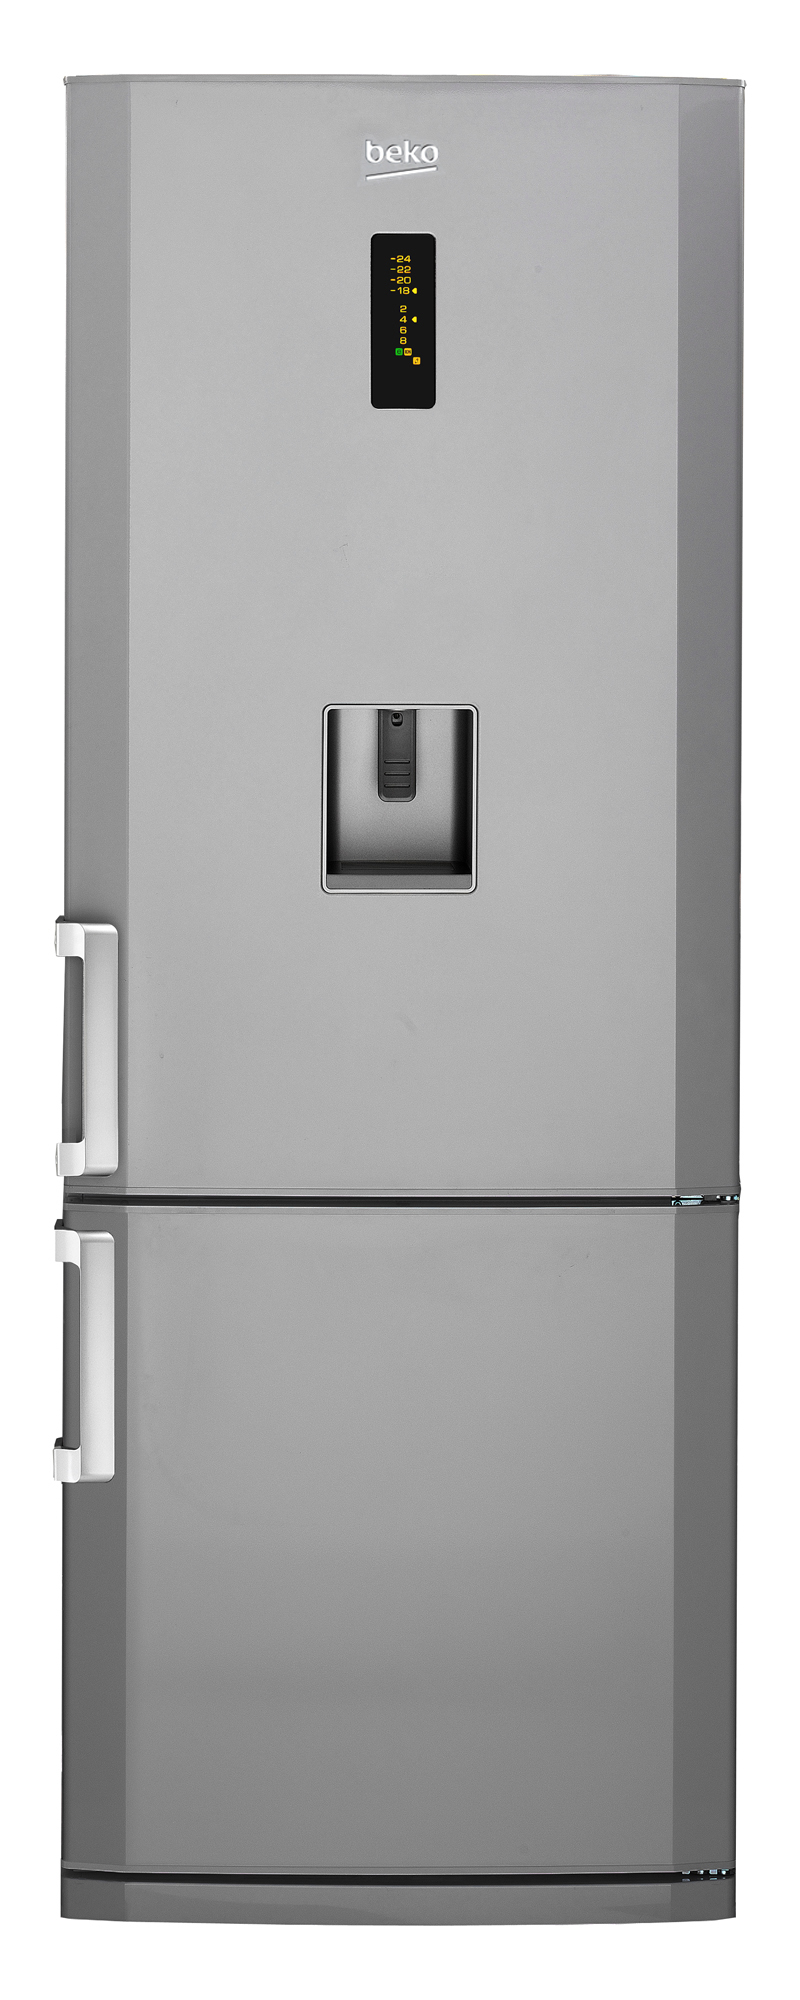 Réfrigérateur combiné beko